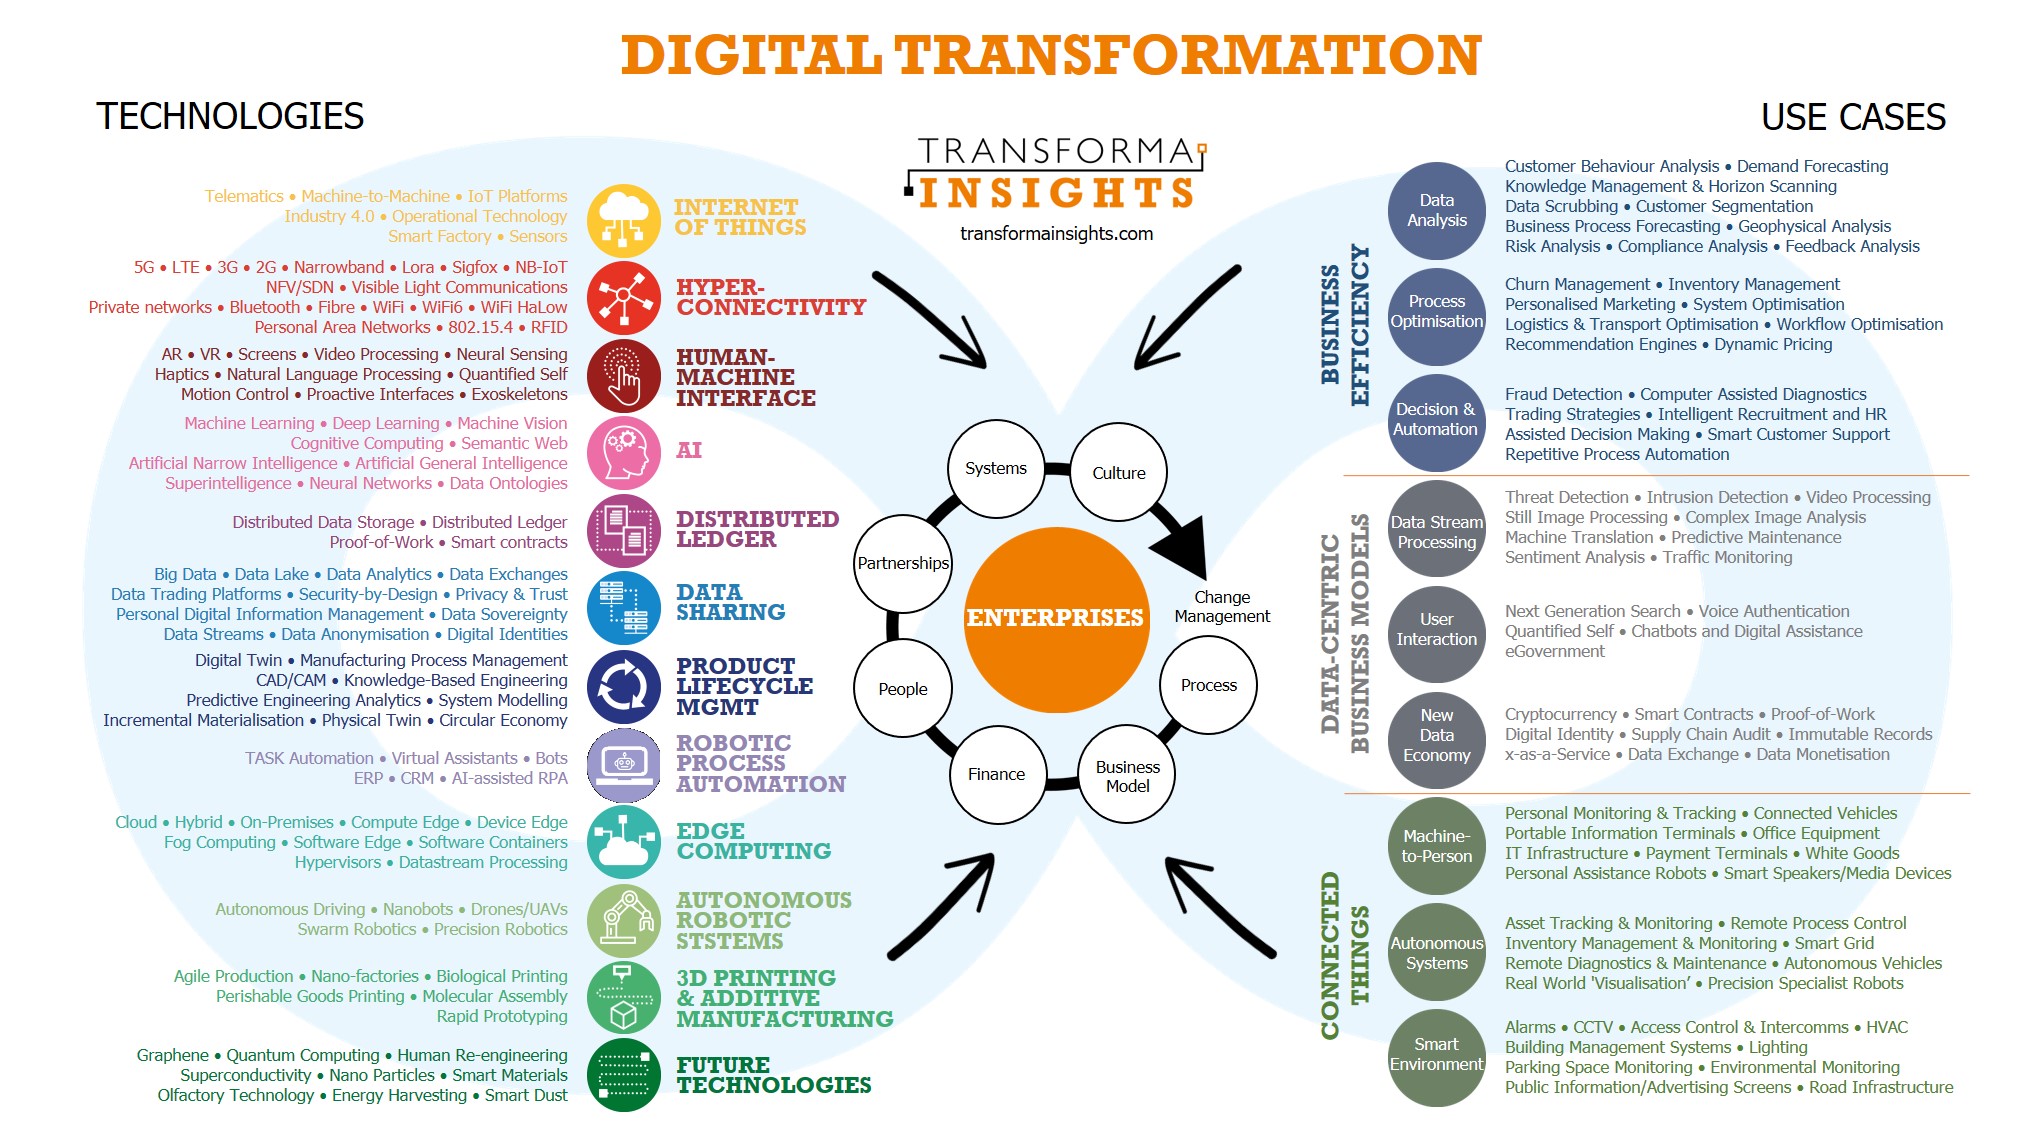 Transforma_Insights_digital_transformation.jpg